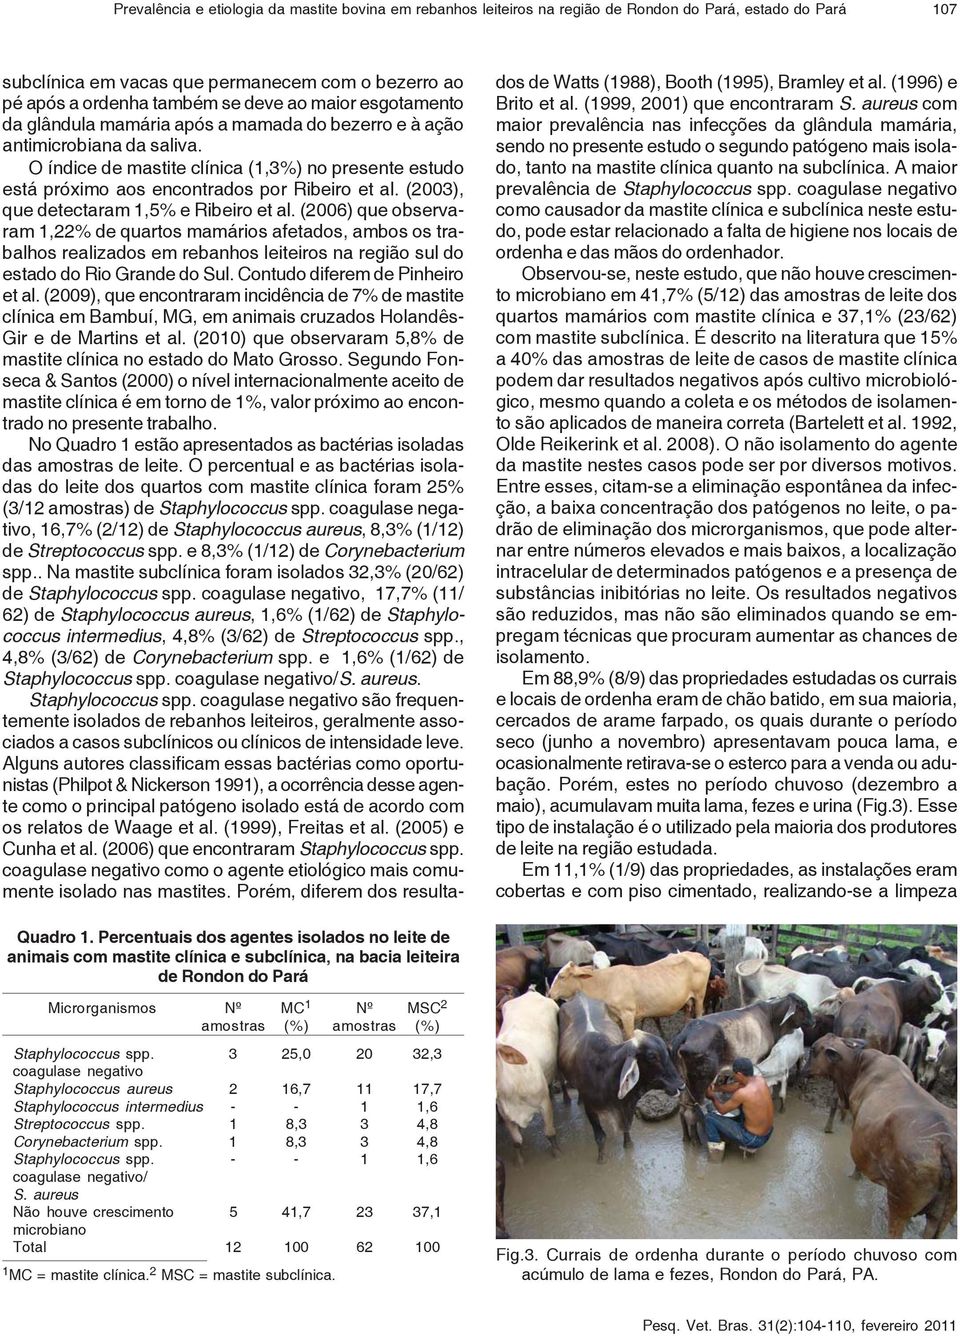 (2003), que detectaram 1,5% e Ribeiro et al. (2006) que observaram 1,22% de quartos mamários afetados, ambos os trabalhos realizados em rebanhos leiteiros na região sul do estado do Rio Grande do Sul.